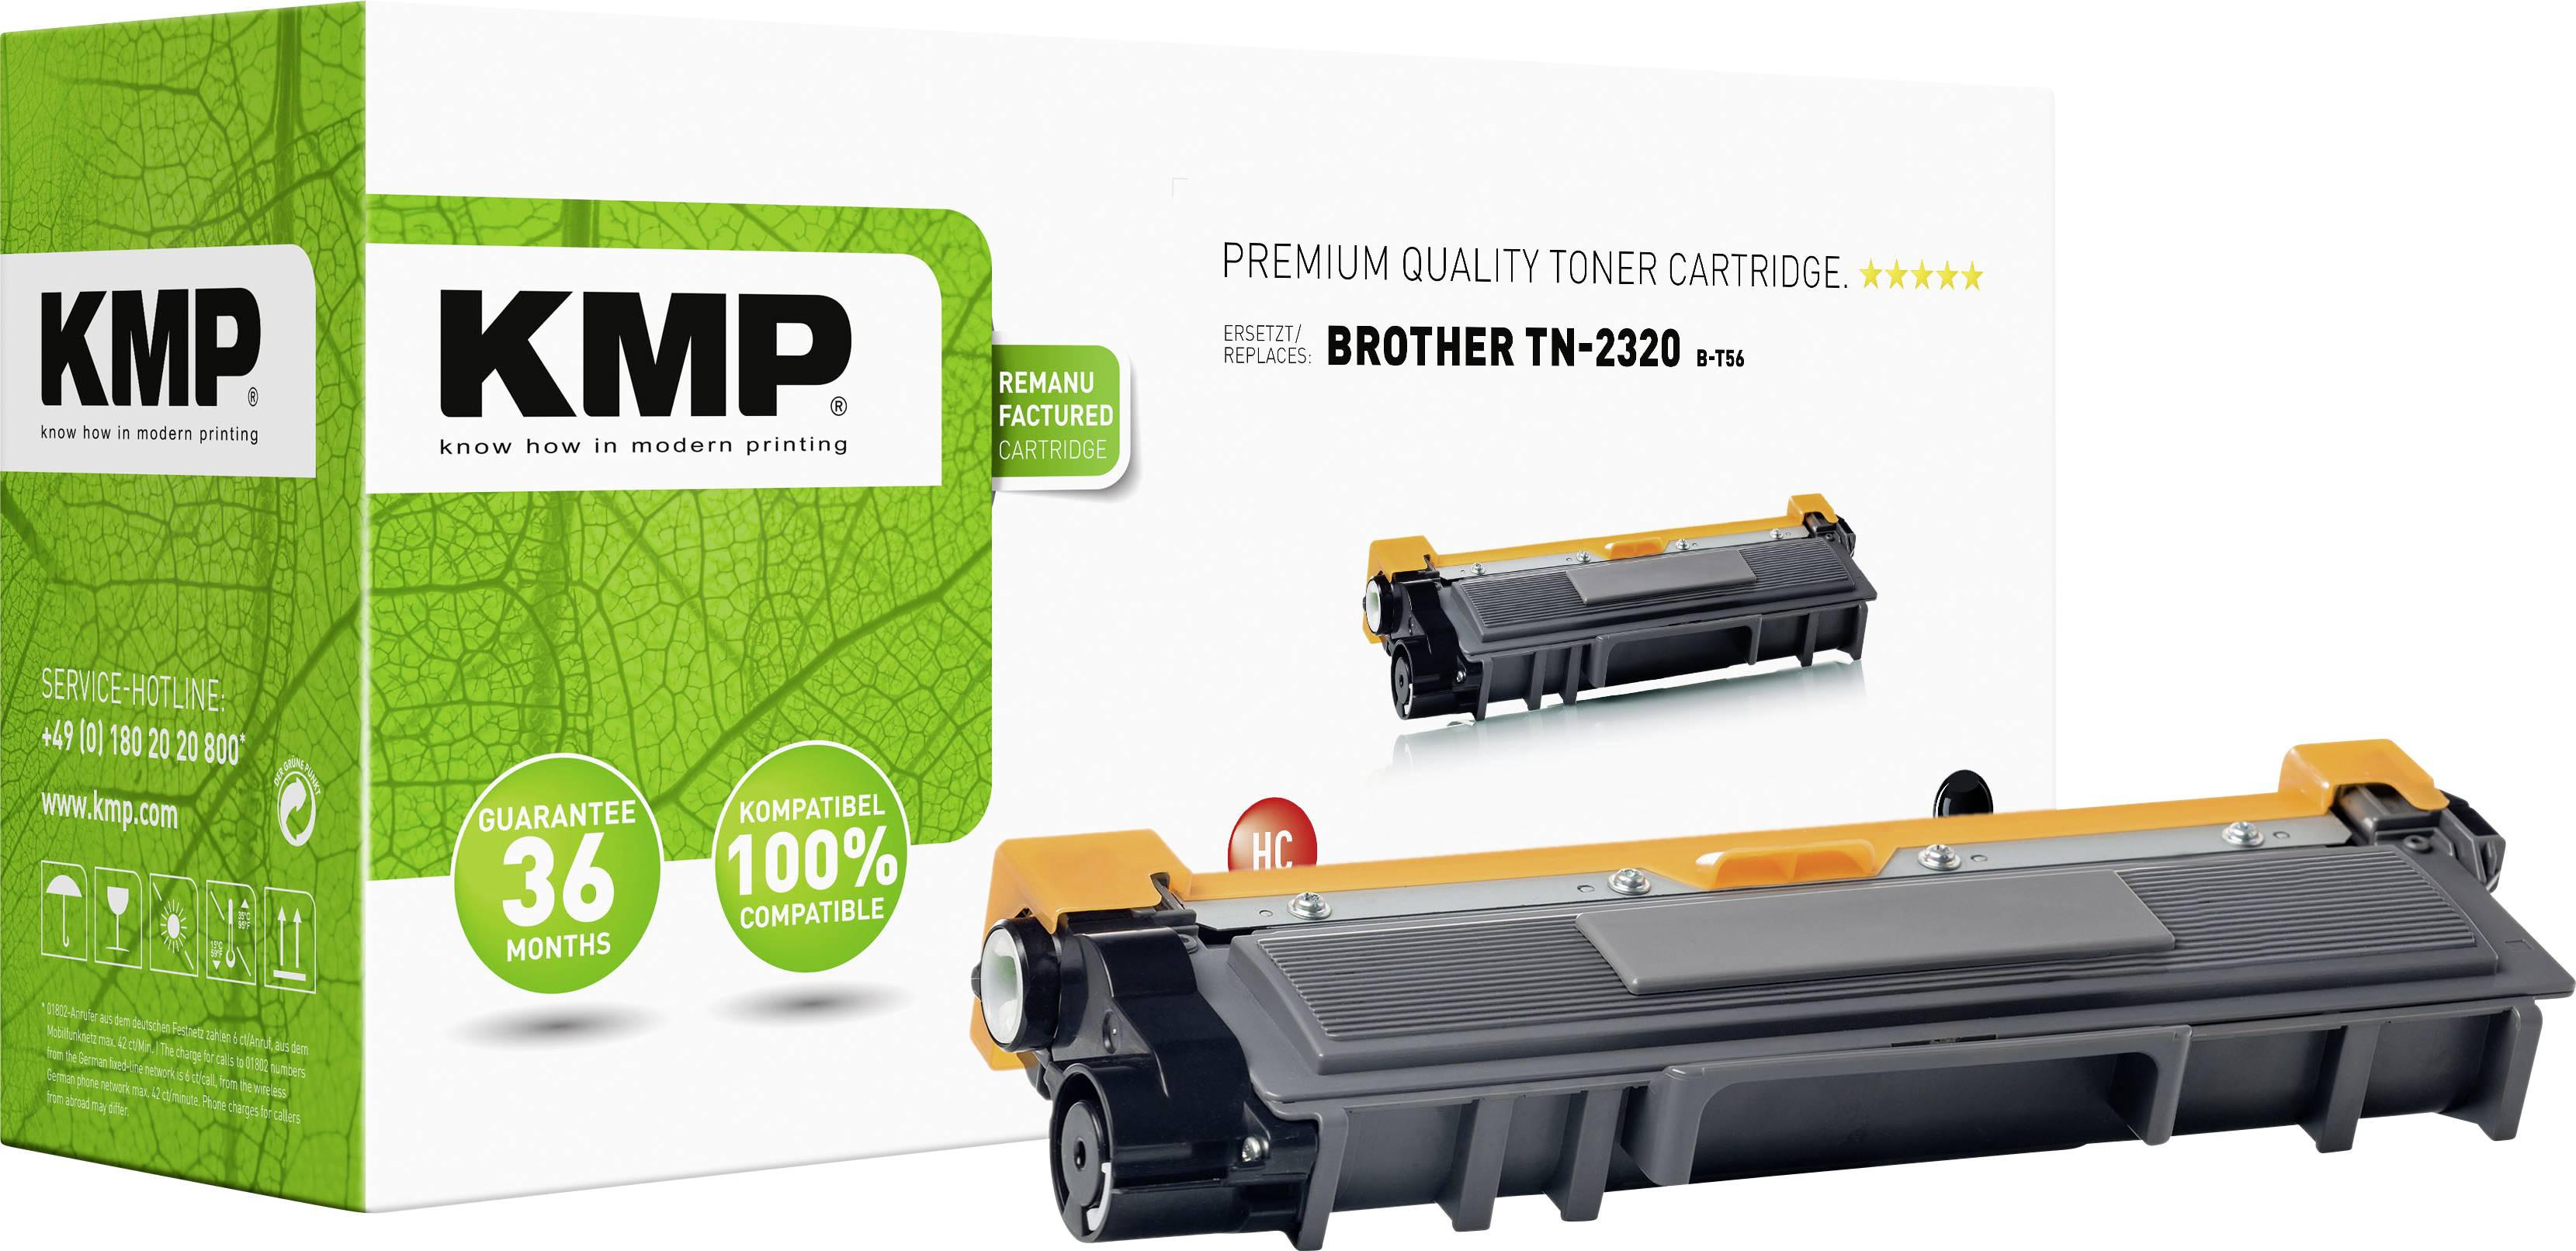 KMP Toner cartridge replaced Brother TN-2310, TN-2320, TN2310, TN2320 2600 Sides B-T56 Conrad.com